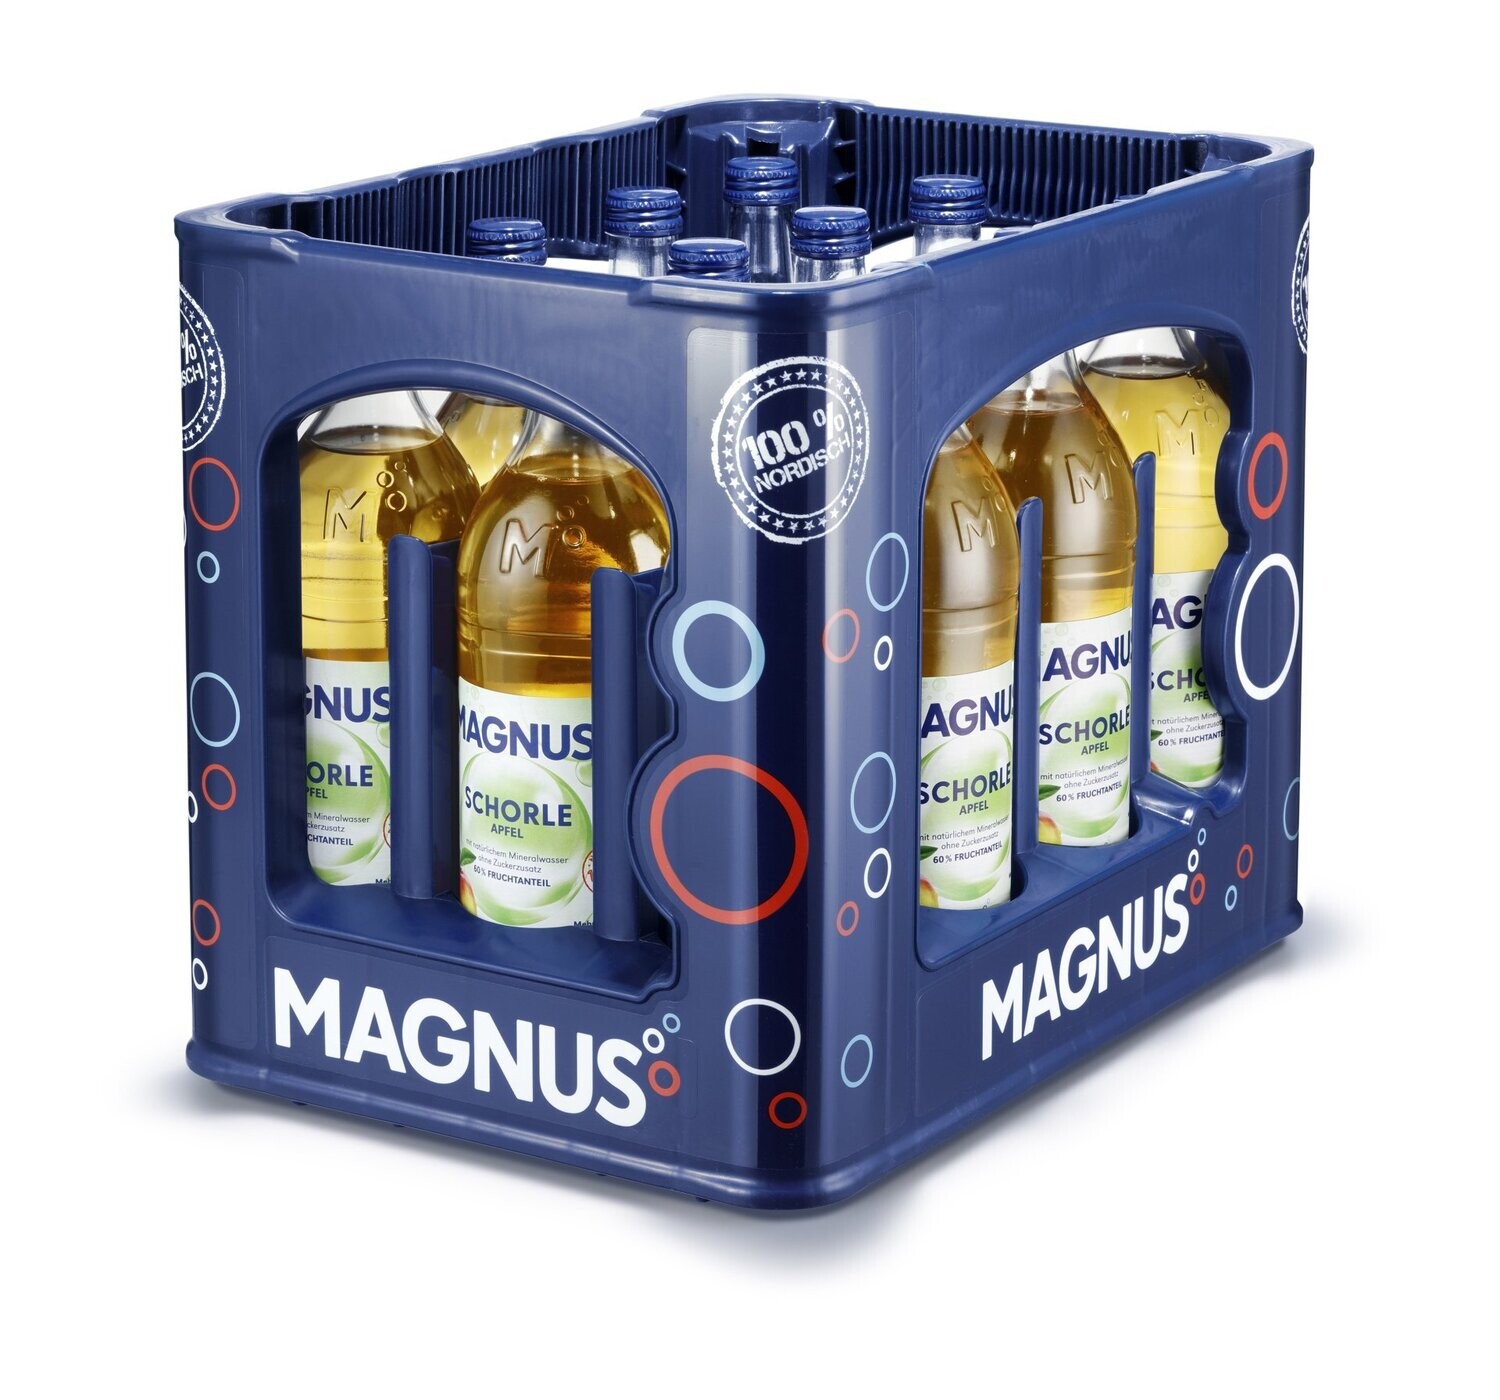 Magnus Apfelschorle
(12x 0,75l Glas FL 11,99 € inkl. MwSt. zzgl. Pfand)